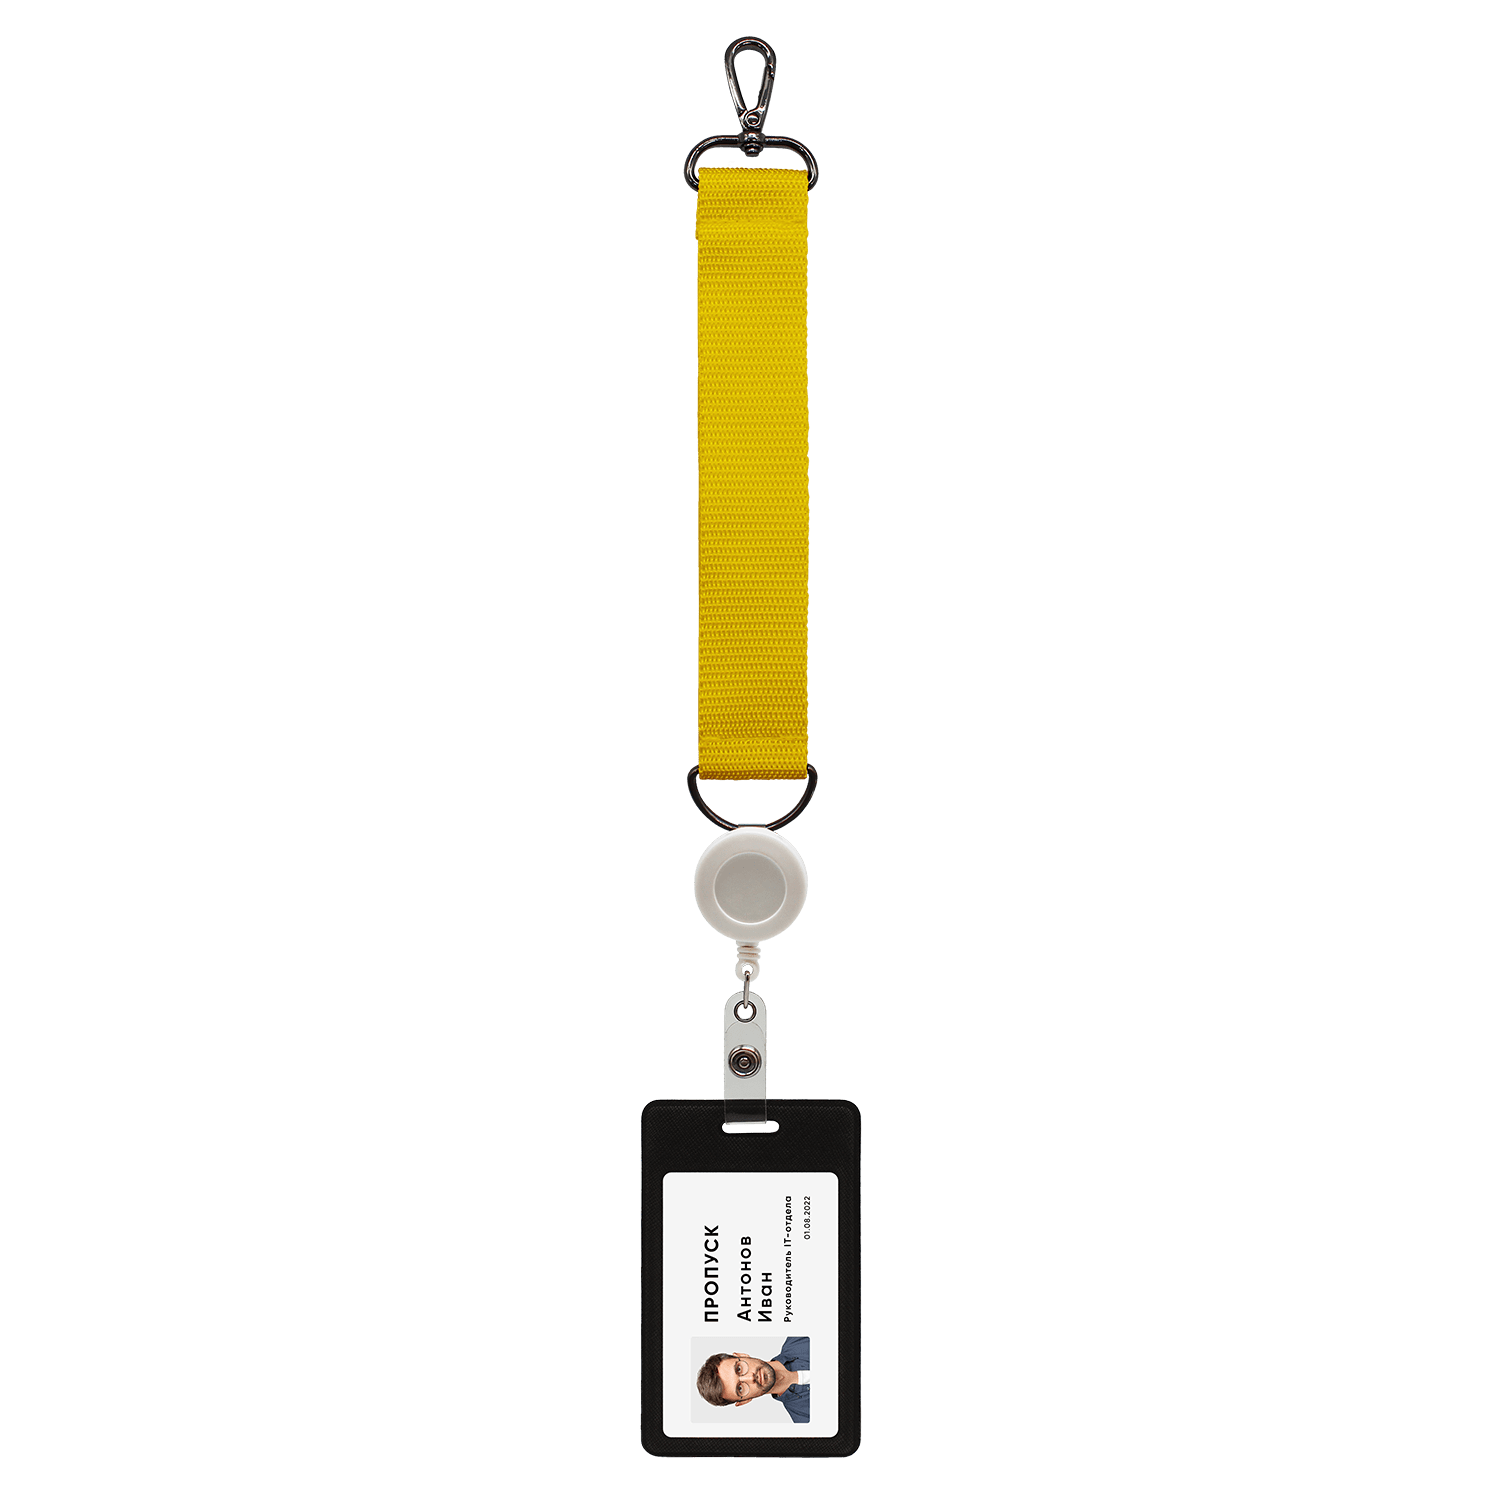 Ремувка 4sb с полукольцом (желтый), желтый, полиэстер